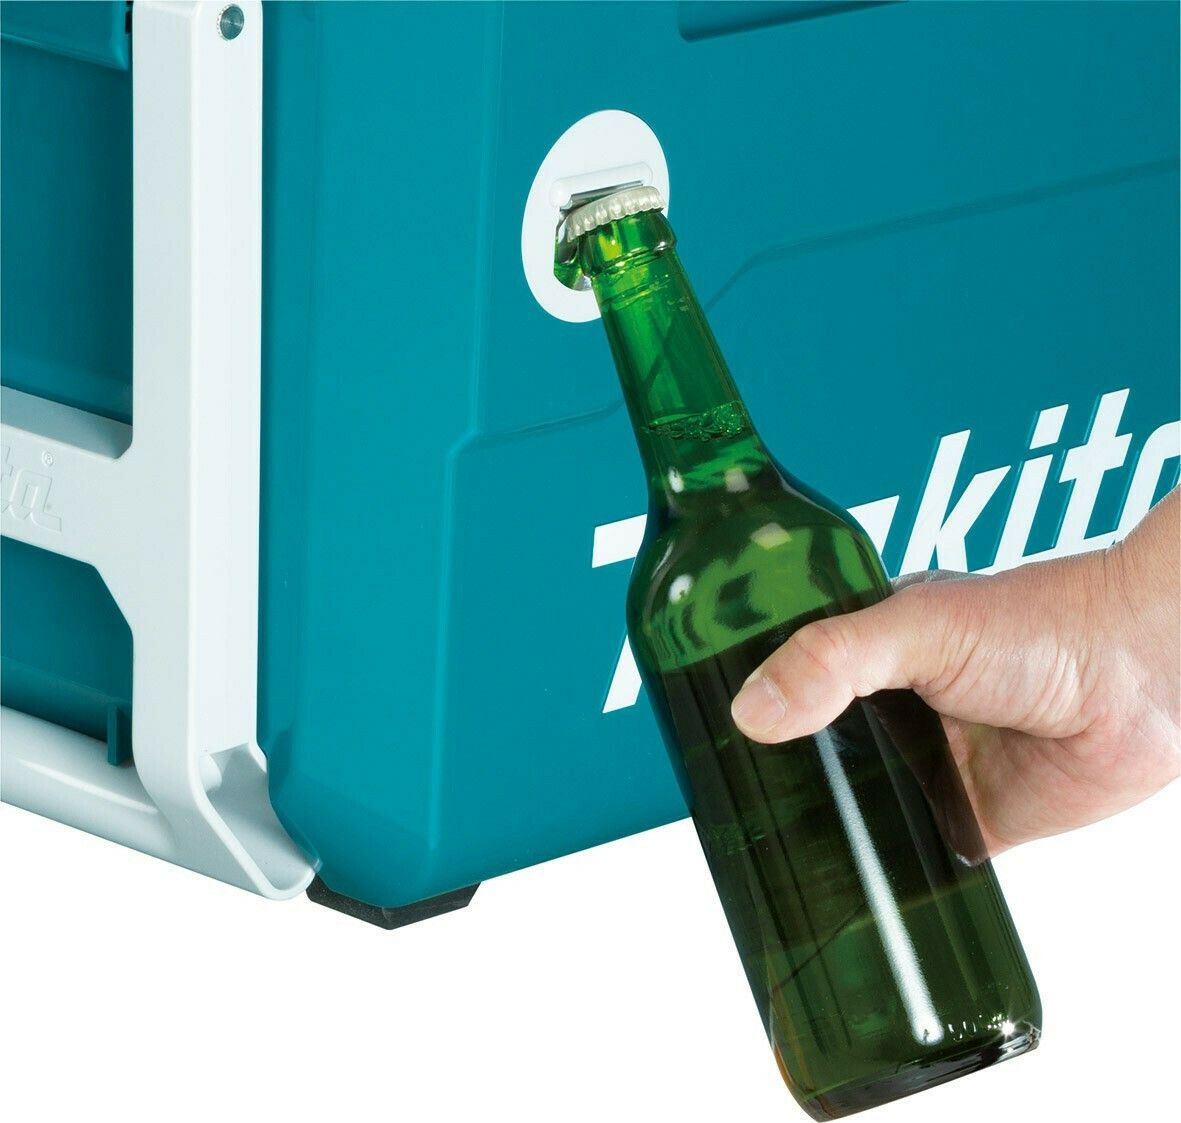 Makita Mobile Cooling Box Φορητό Ψυγείο